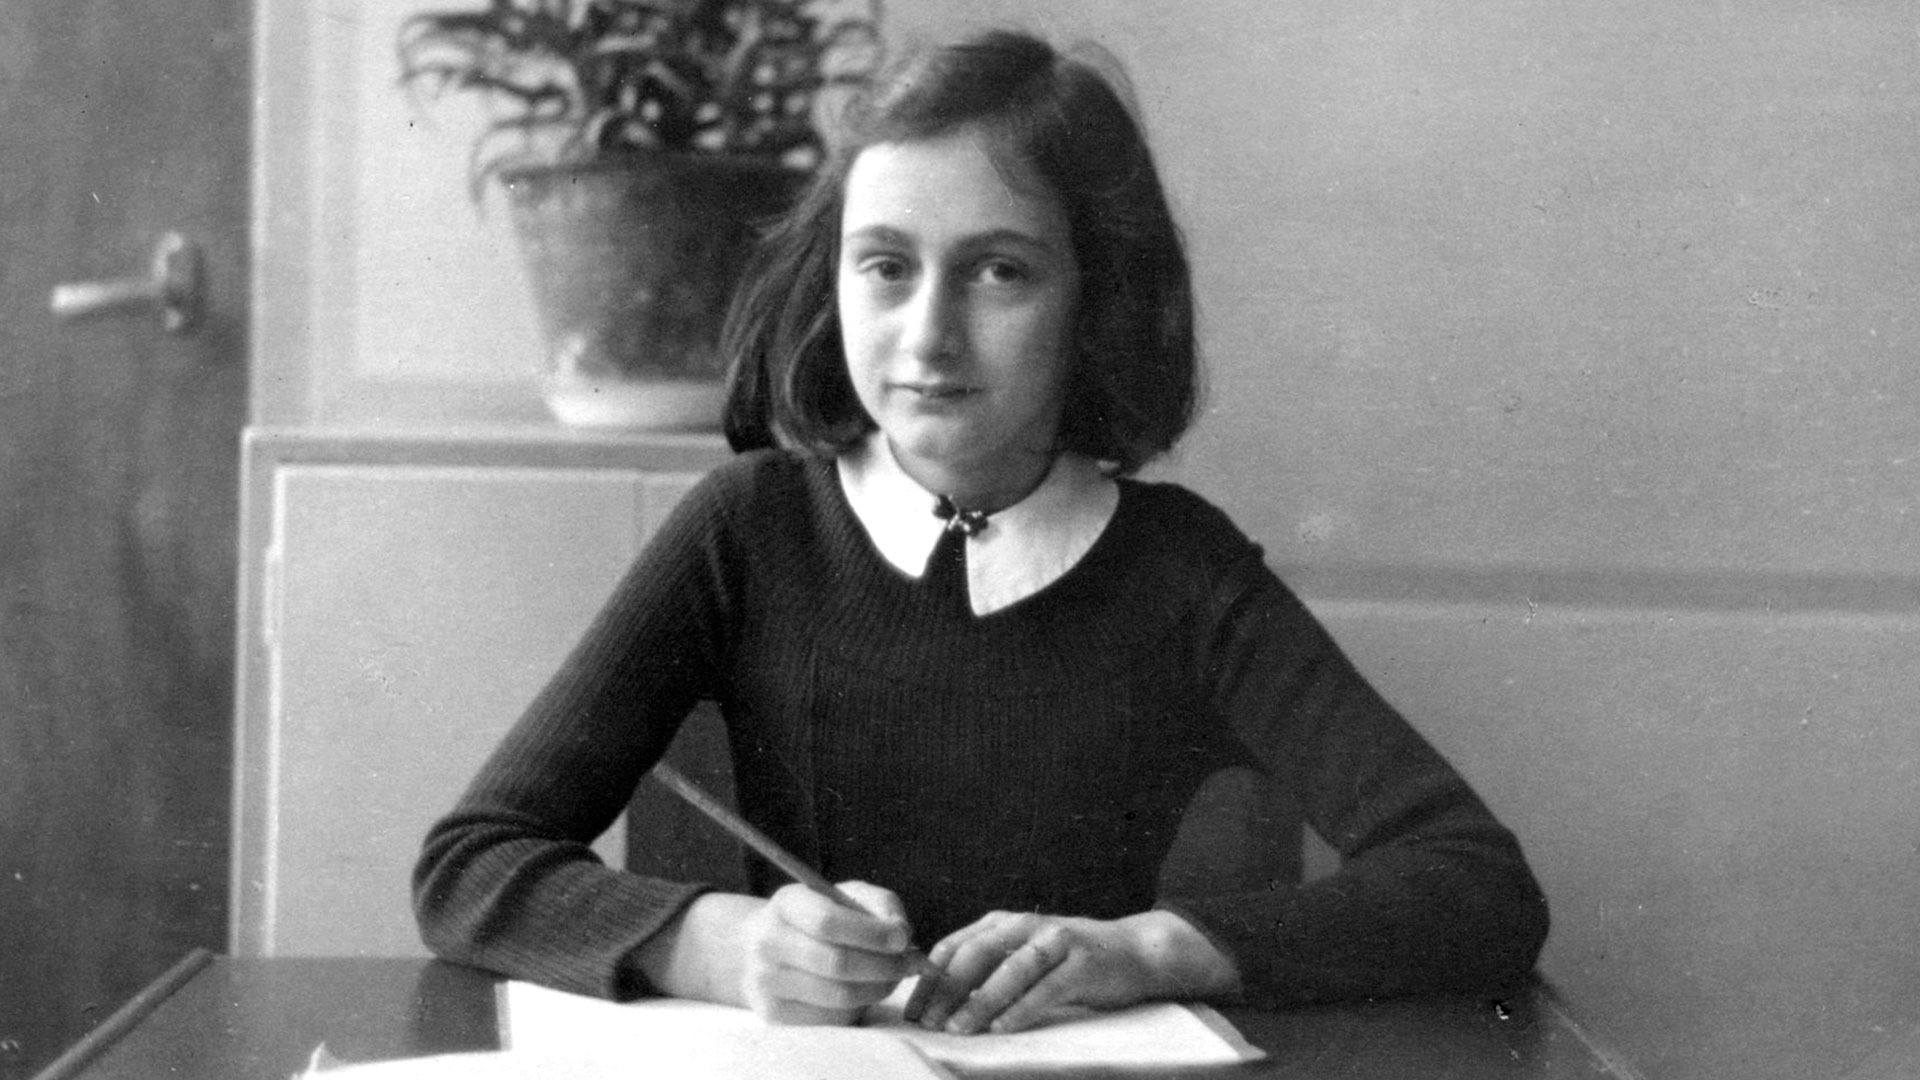 El calvario final de Ana Frank: su muerte a los 15 años rapada, hambrienta y con la ropa infestada de piojos 